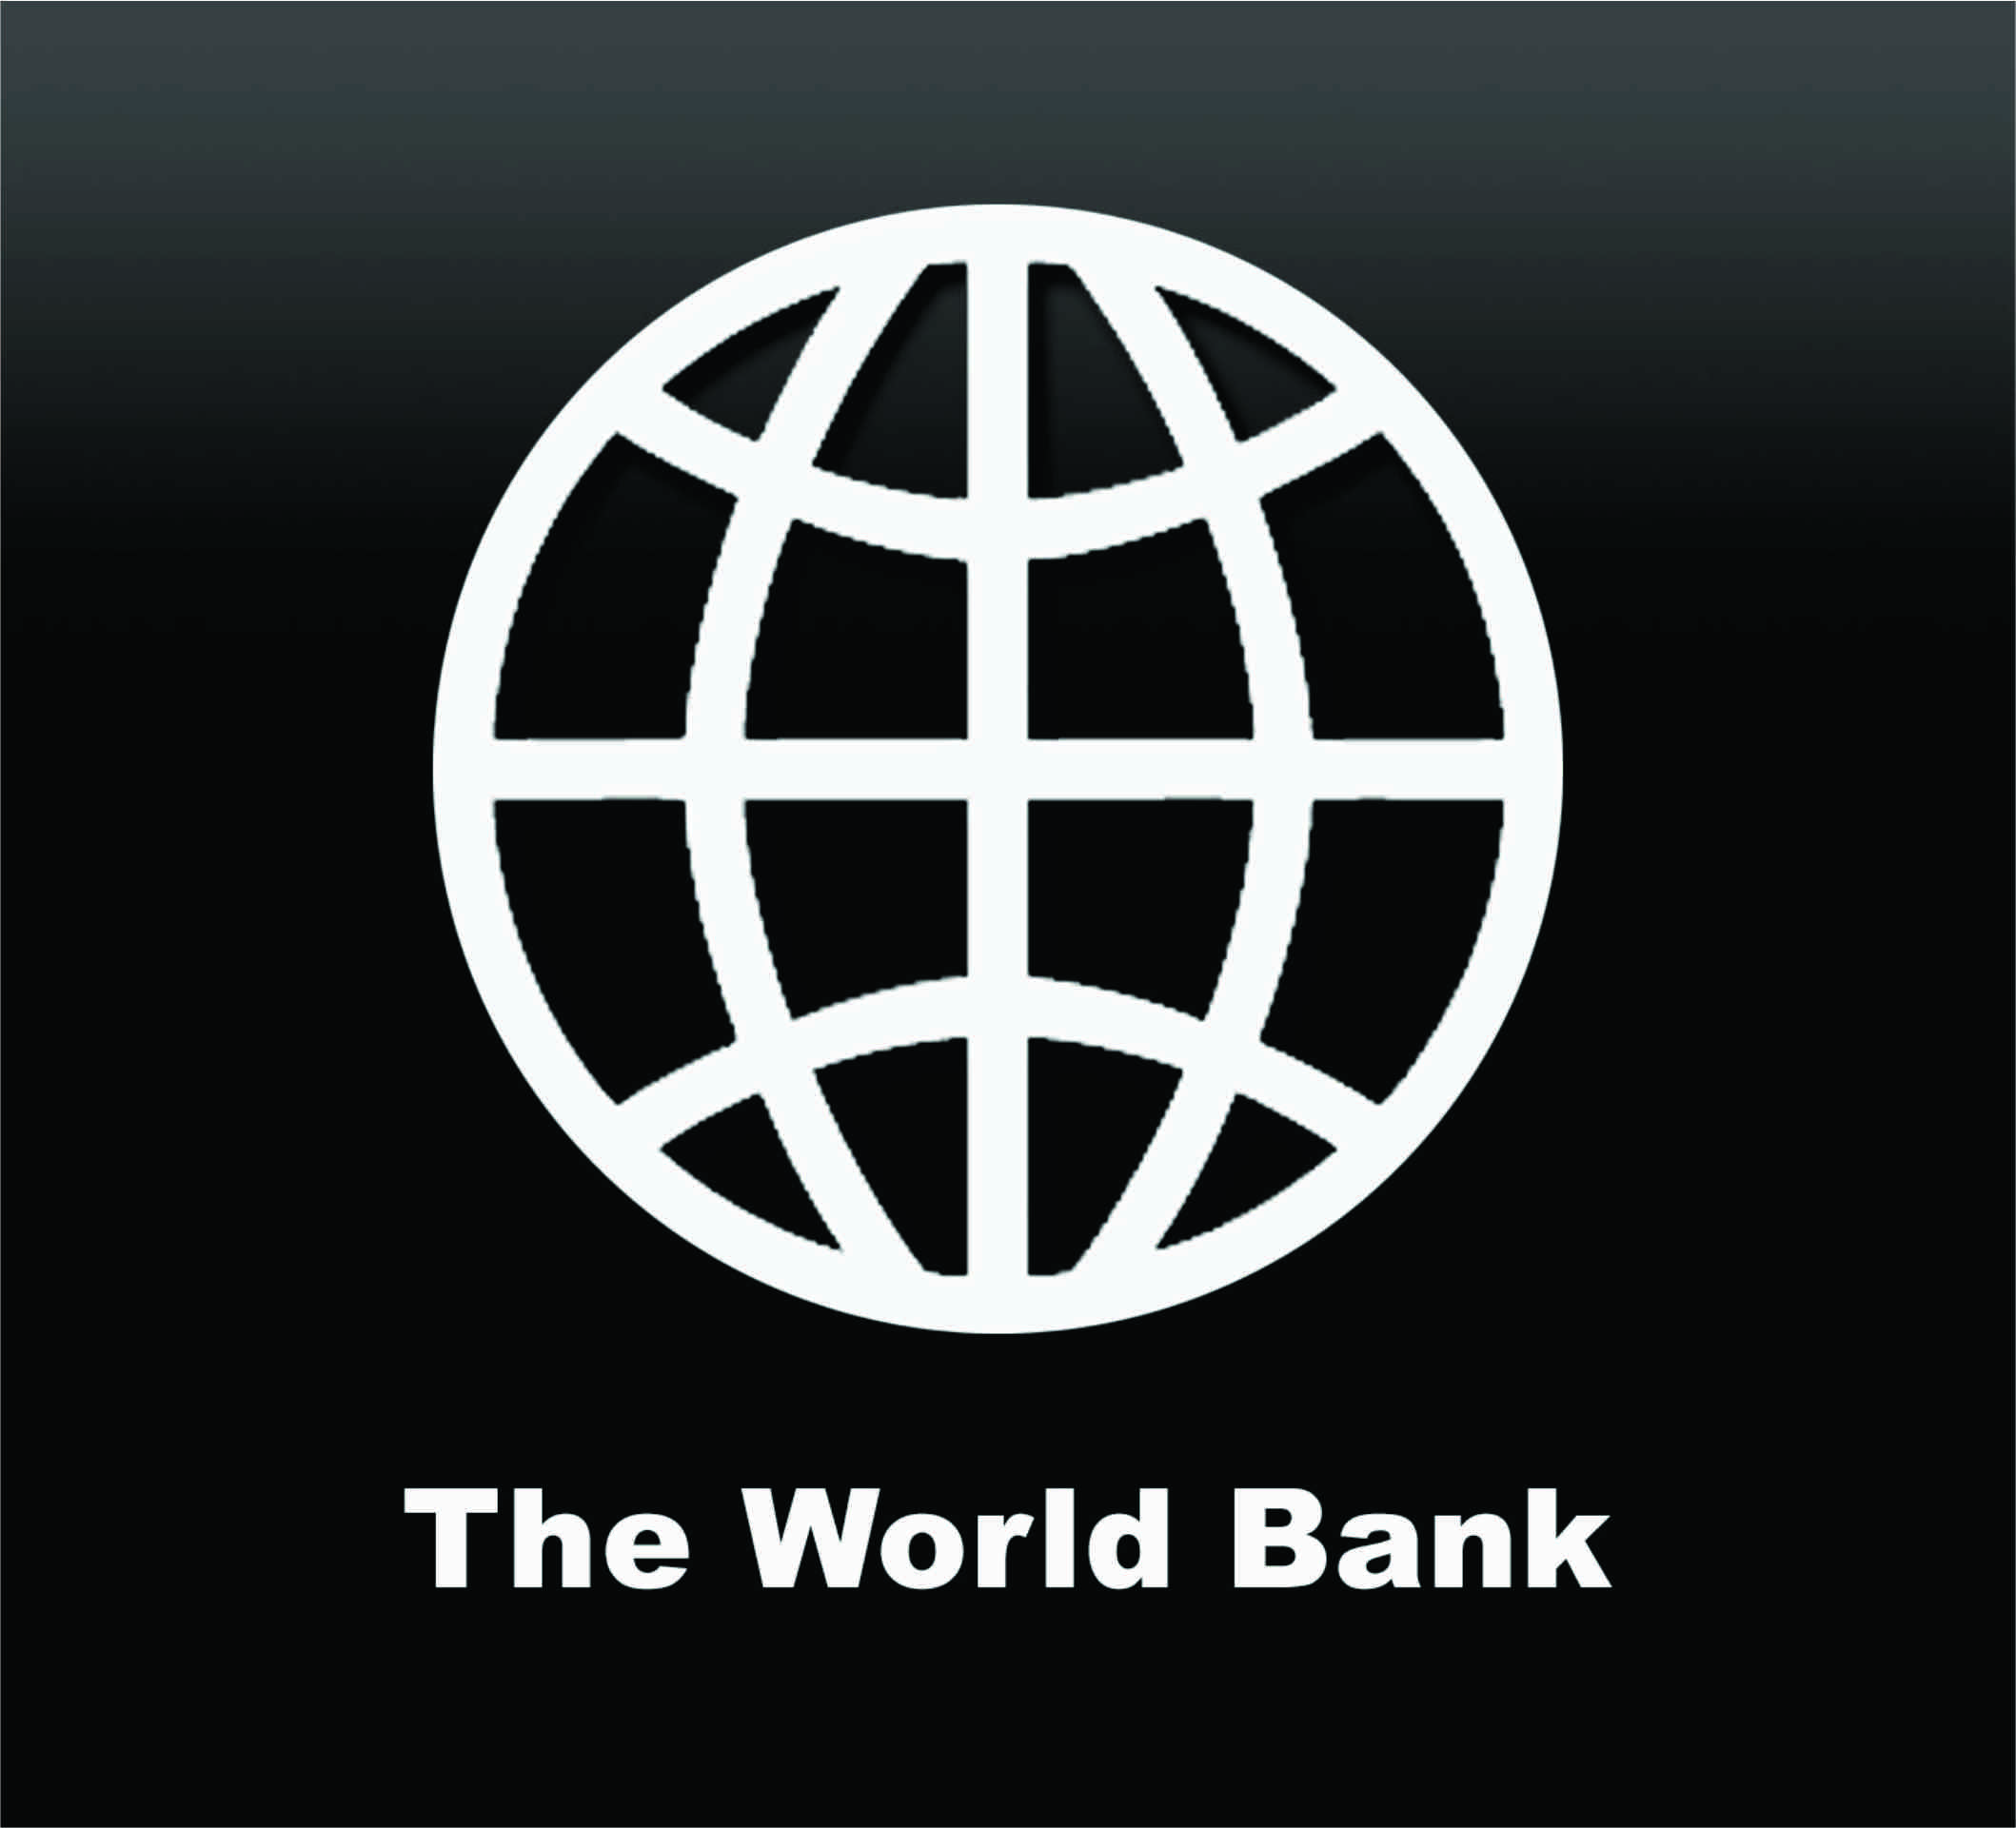 Всемирный банк деятельность. Всемирного банка (the World Bank). Всемирный банк логотип. Логотипы Мировых банков. Группа Всемирного банка лого.